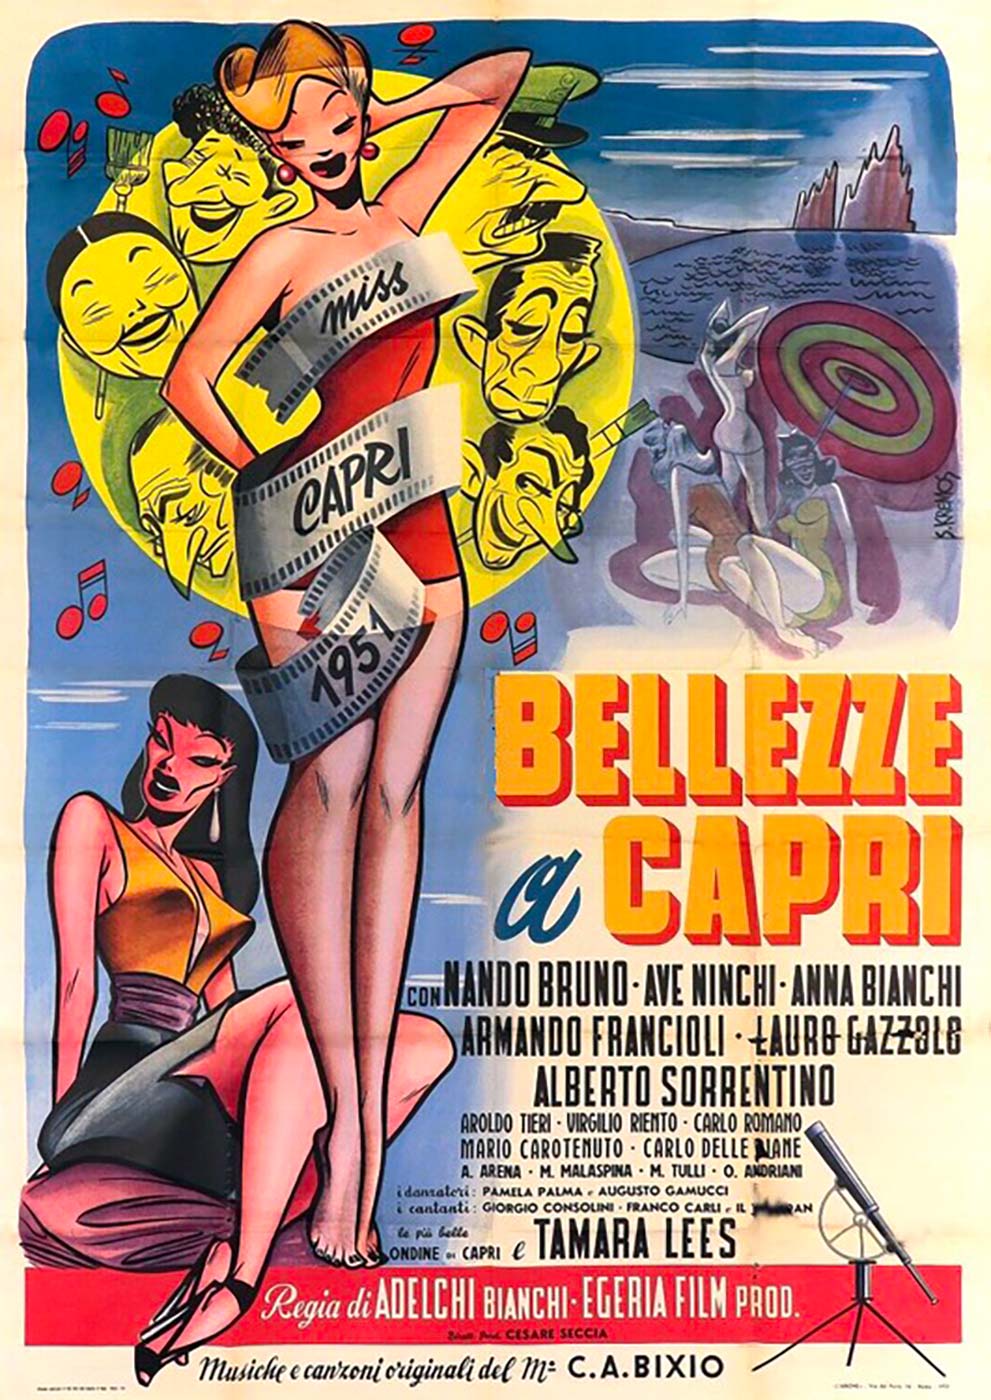 Al via la serie di film “I bellissimi del venerdì” su Capri Spettacoli Tv: si inizia con “Bellezze a Capri”